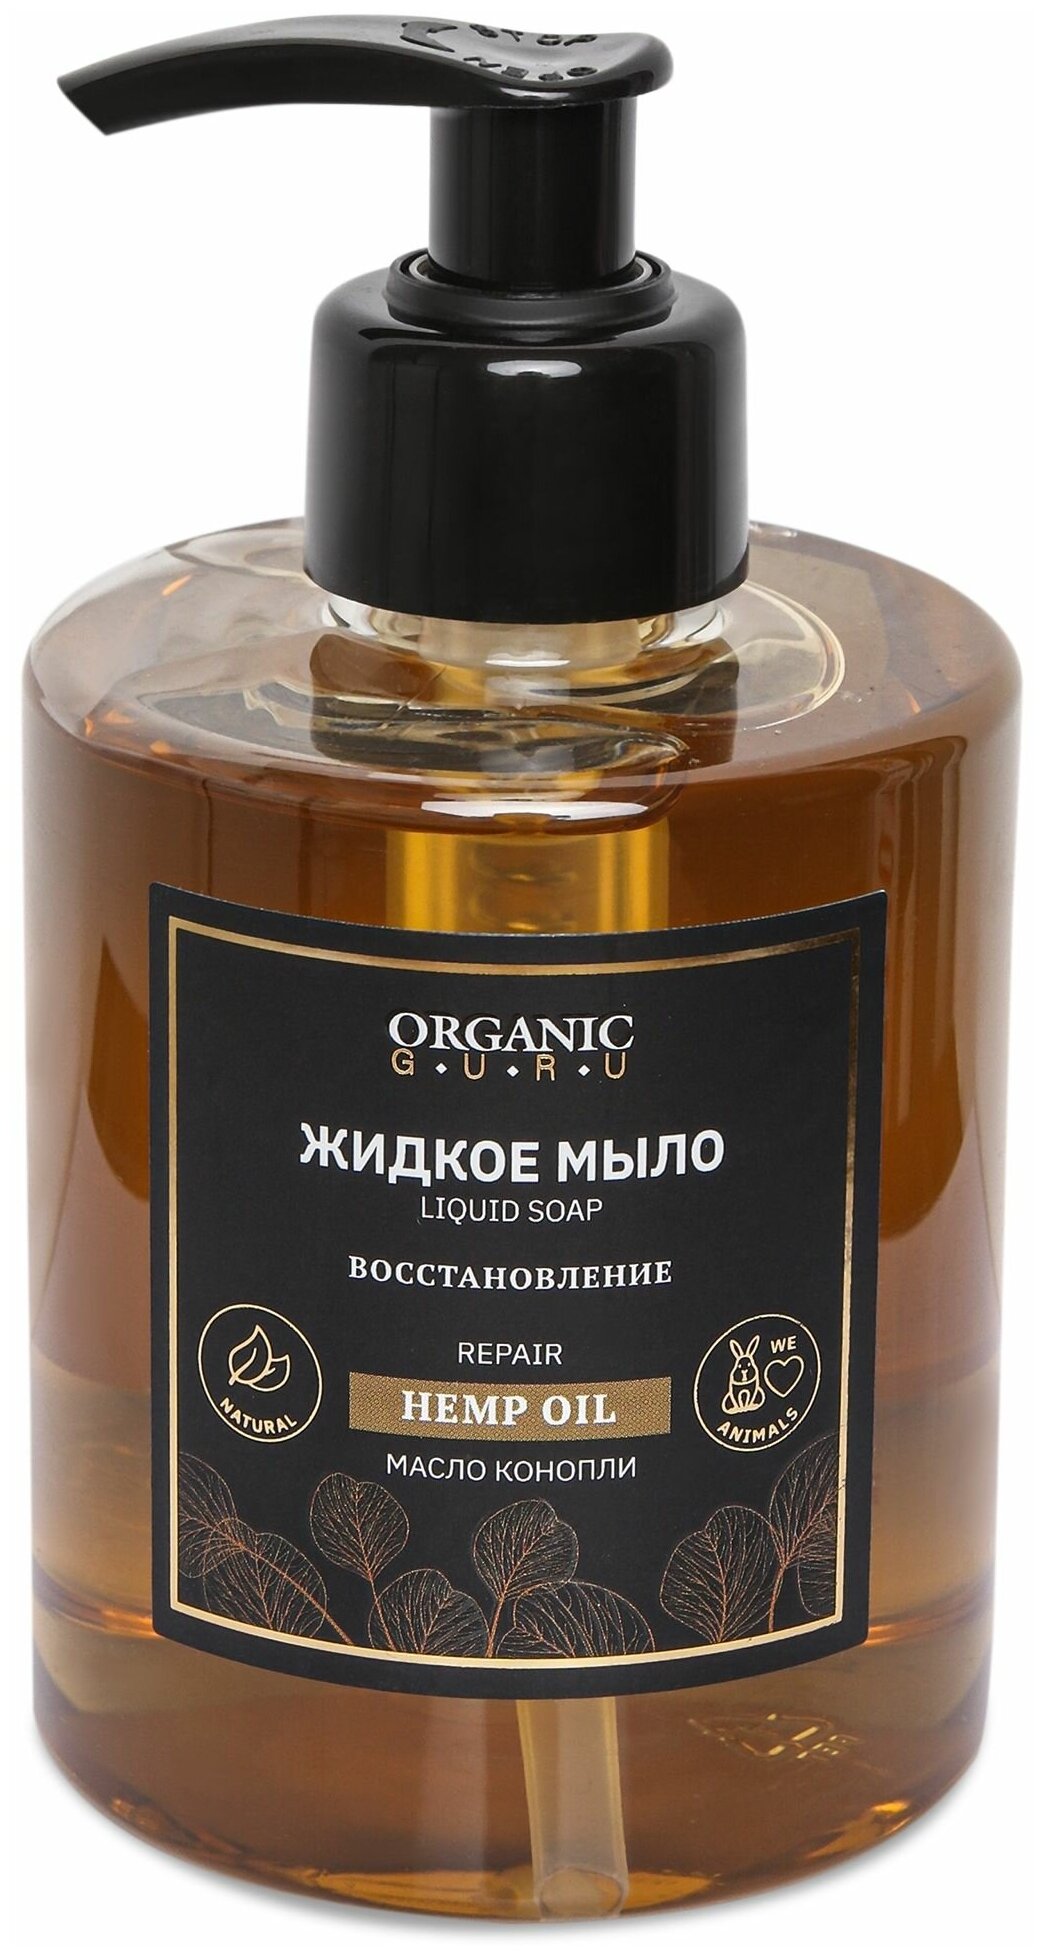 Organic Guru Натуральное жидкое мыло "Hemp OIL" Питание и Восстановление, 300 мл. Органик Гуру